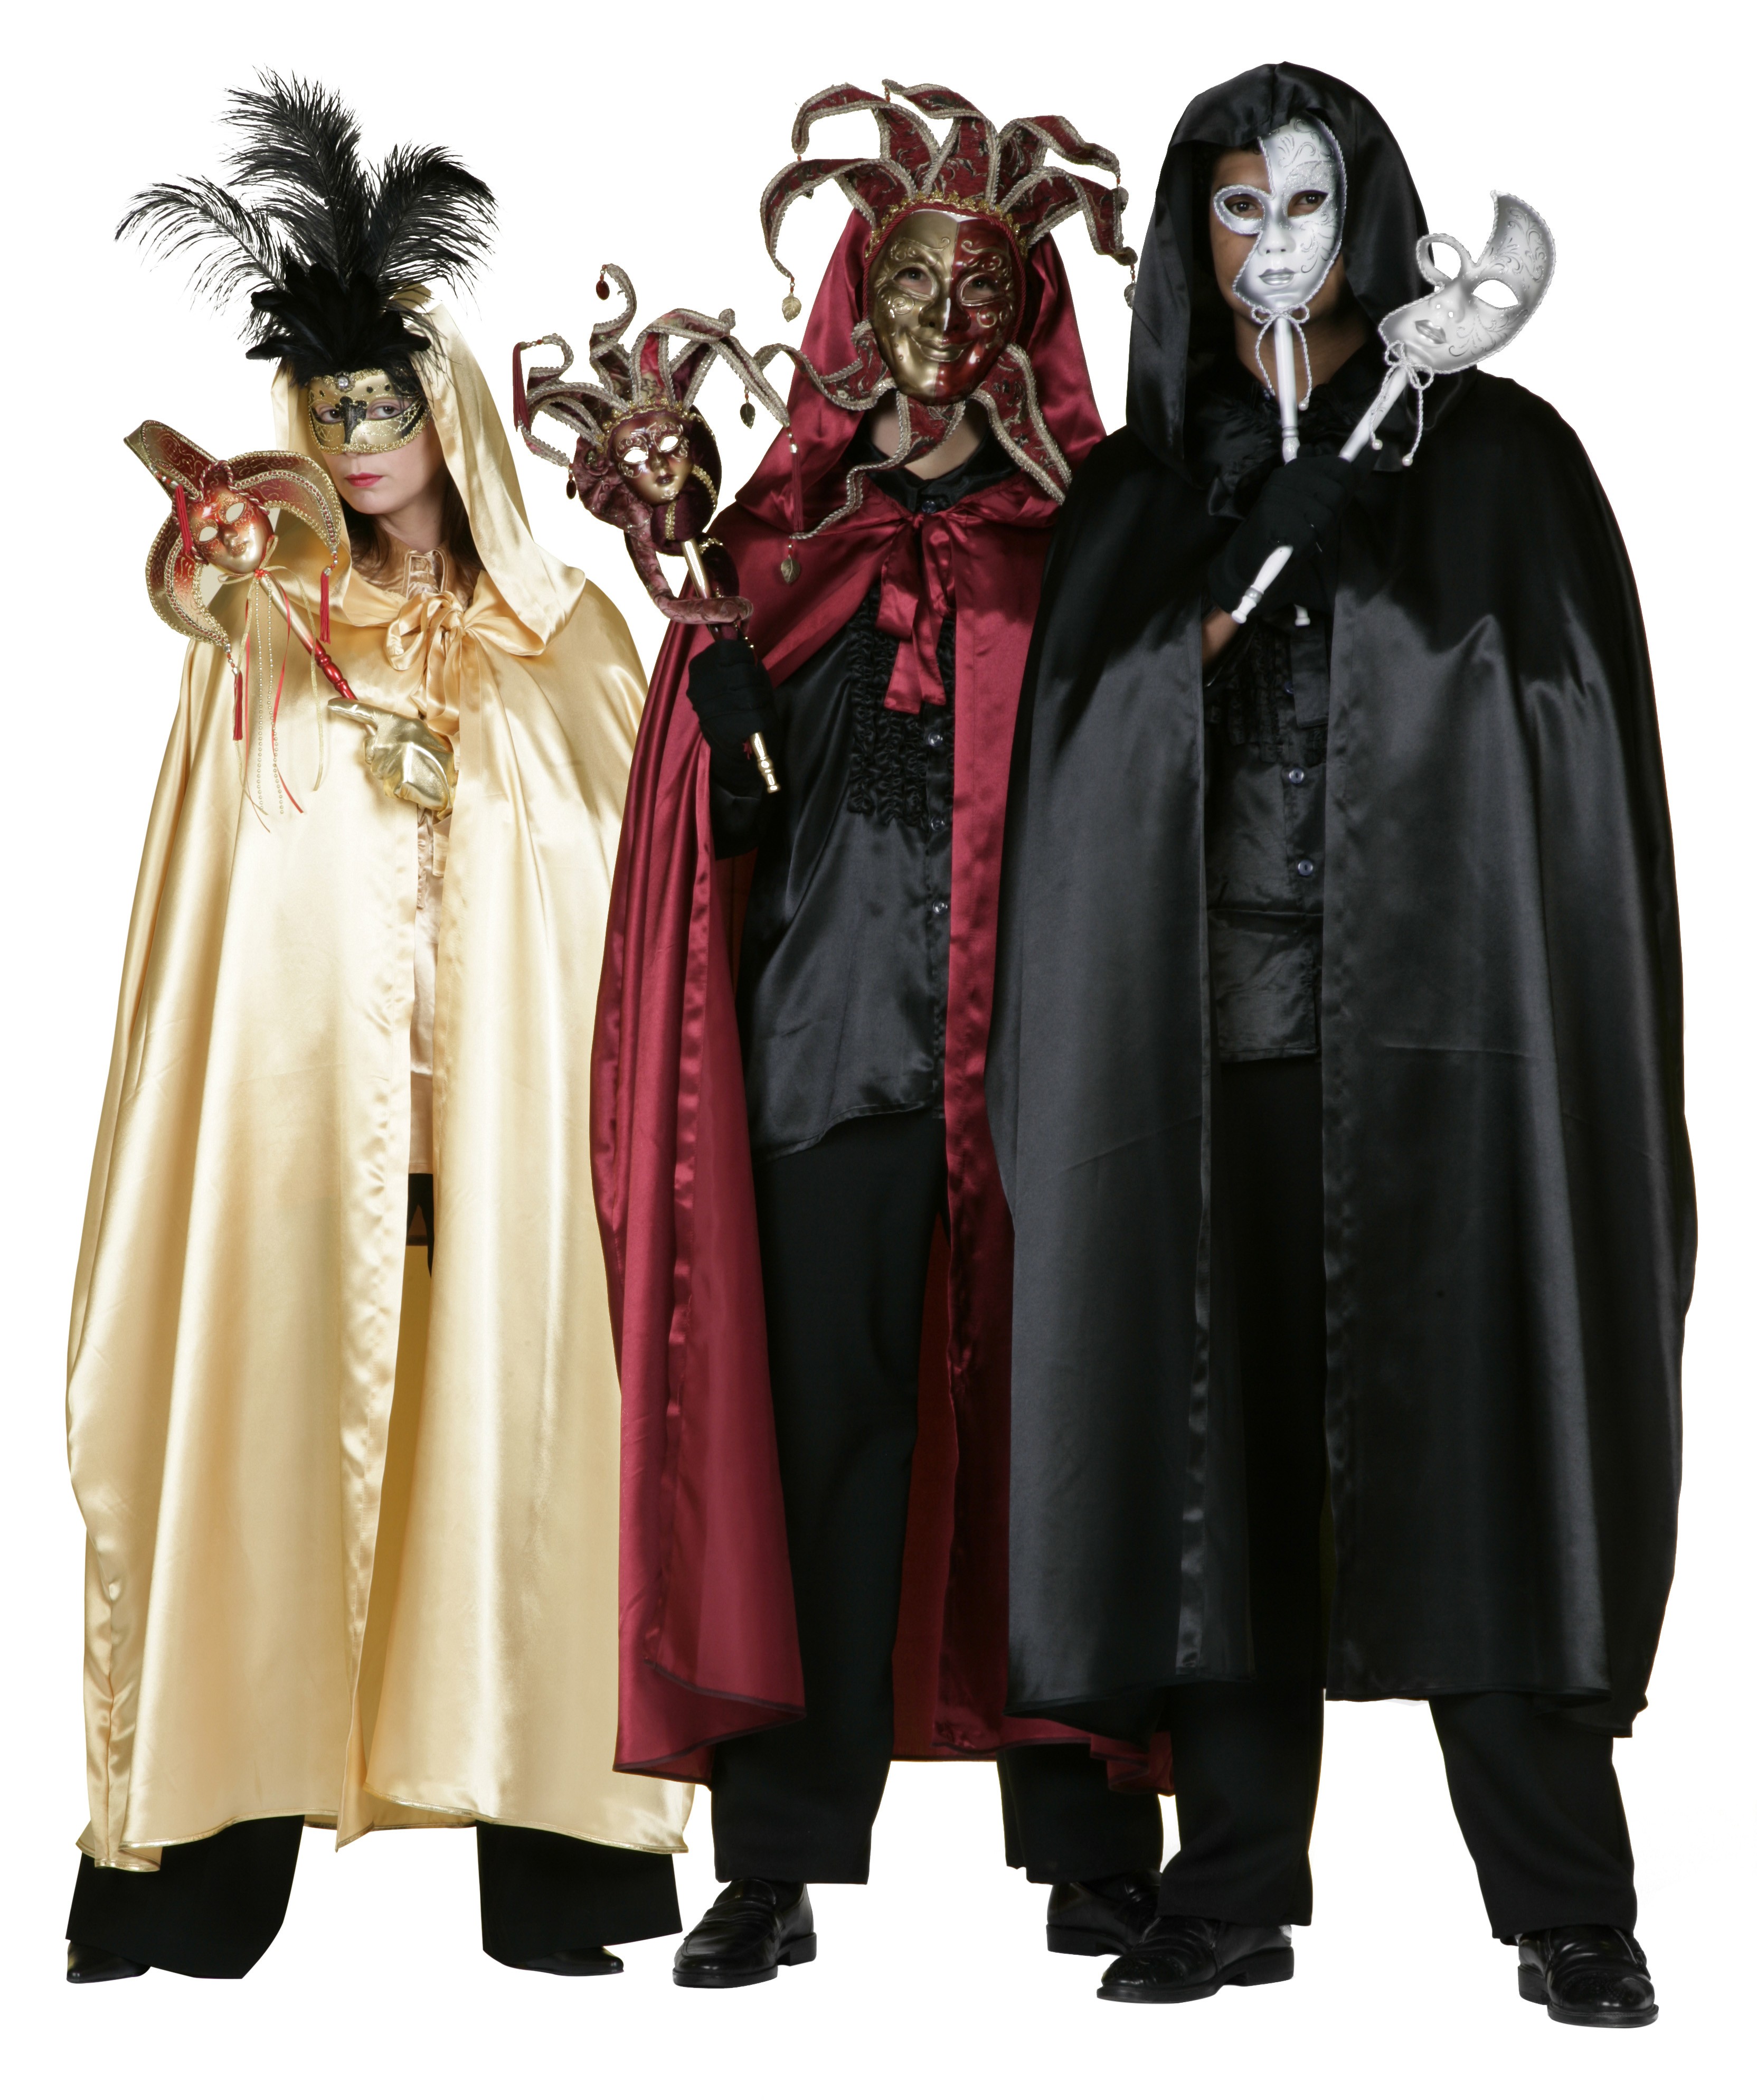 Tenue Carnaval Venise - Deguisement Adulte Le Deguisement.com